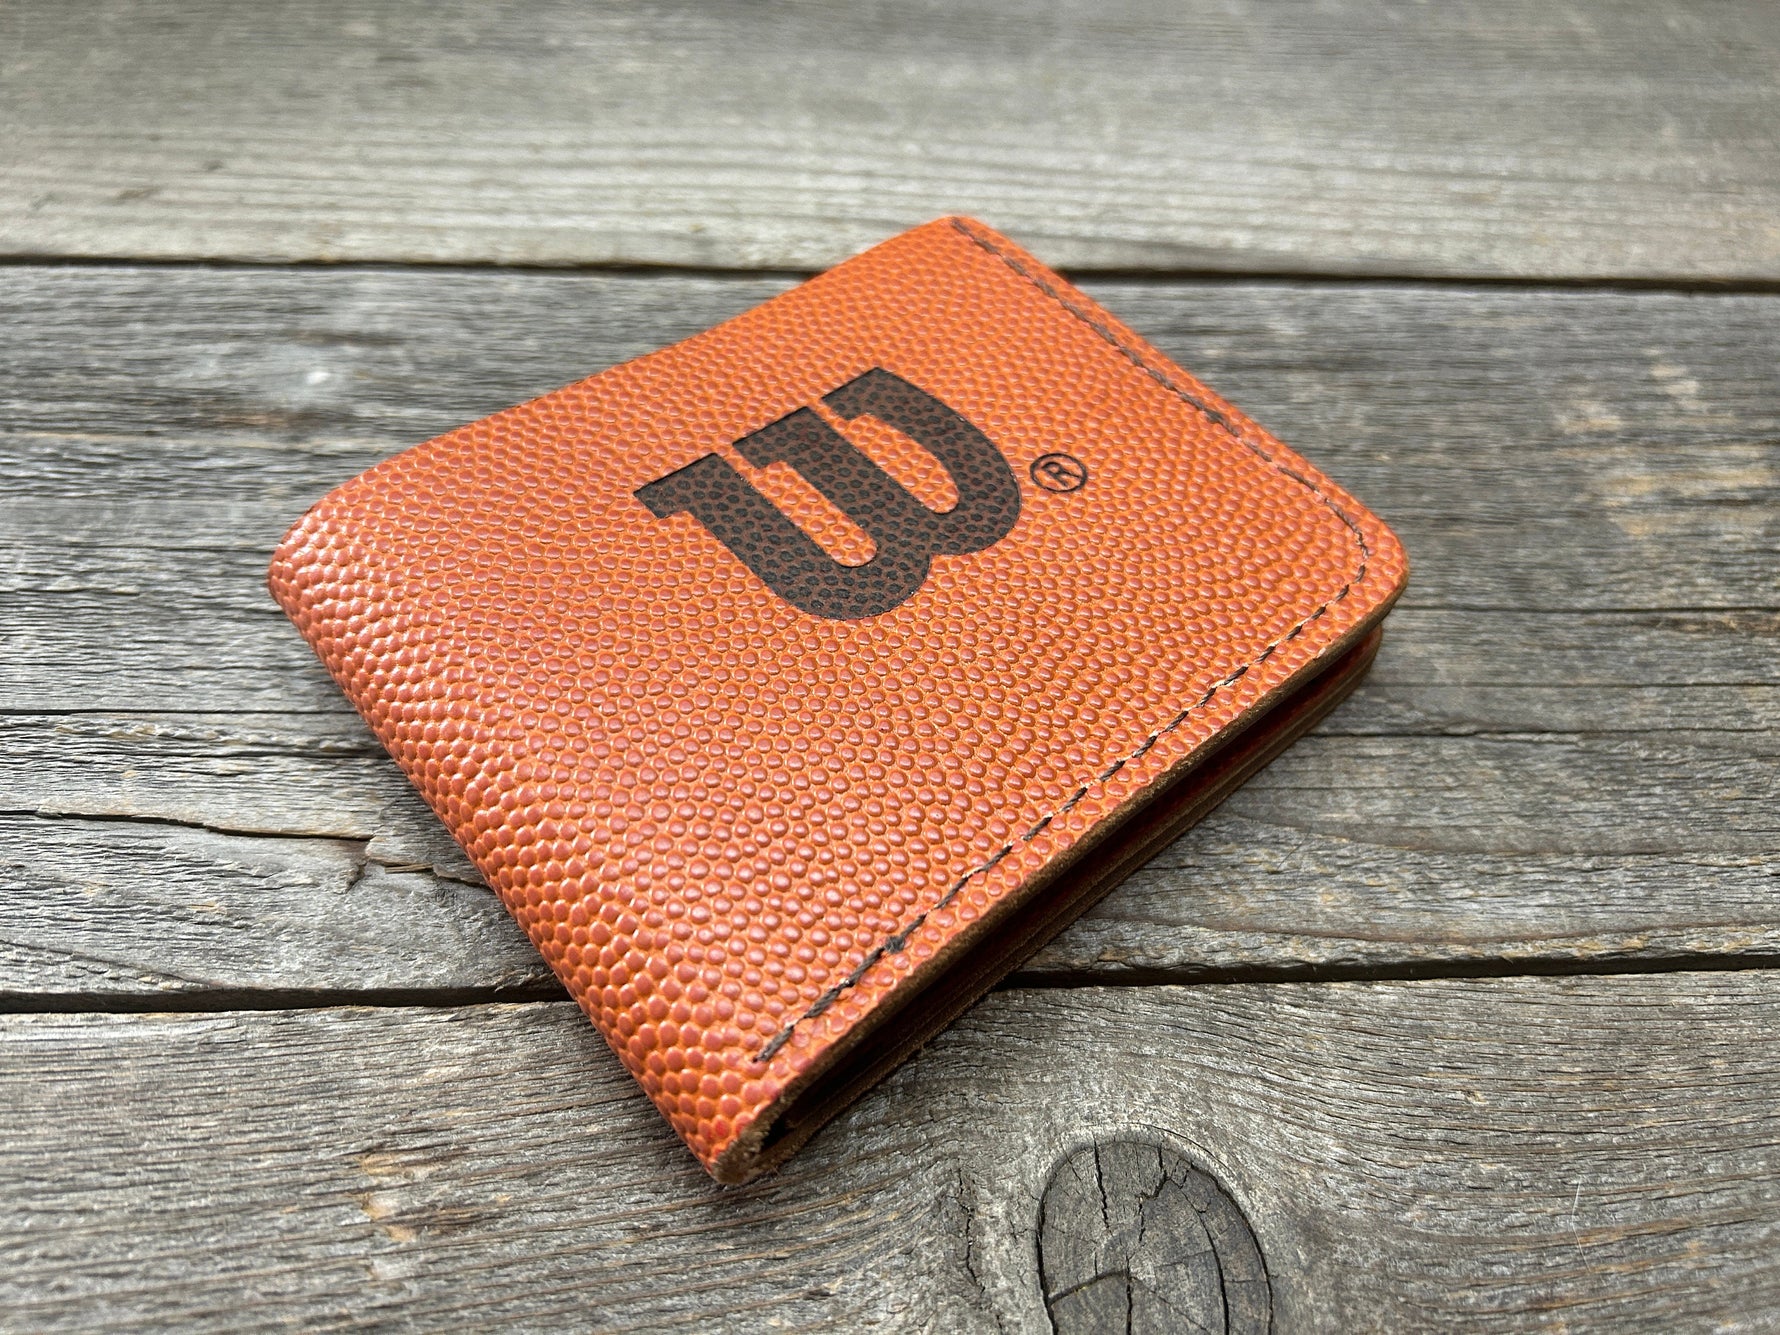 Horween (Wilson NBA Leather) Bifold Wallet!!